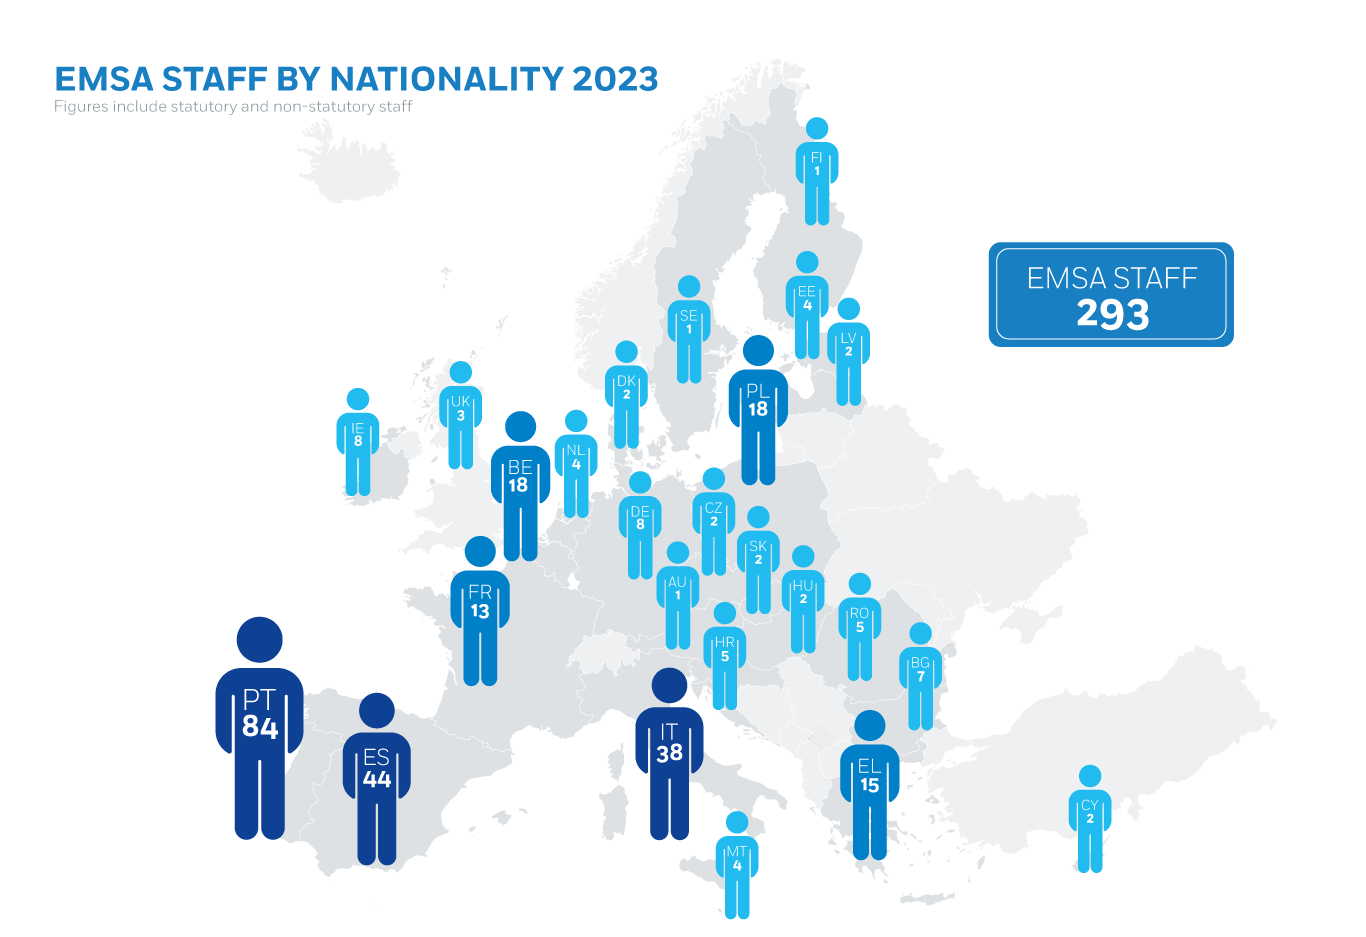 EMSA Staff by Nationality 2020 Image 1